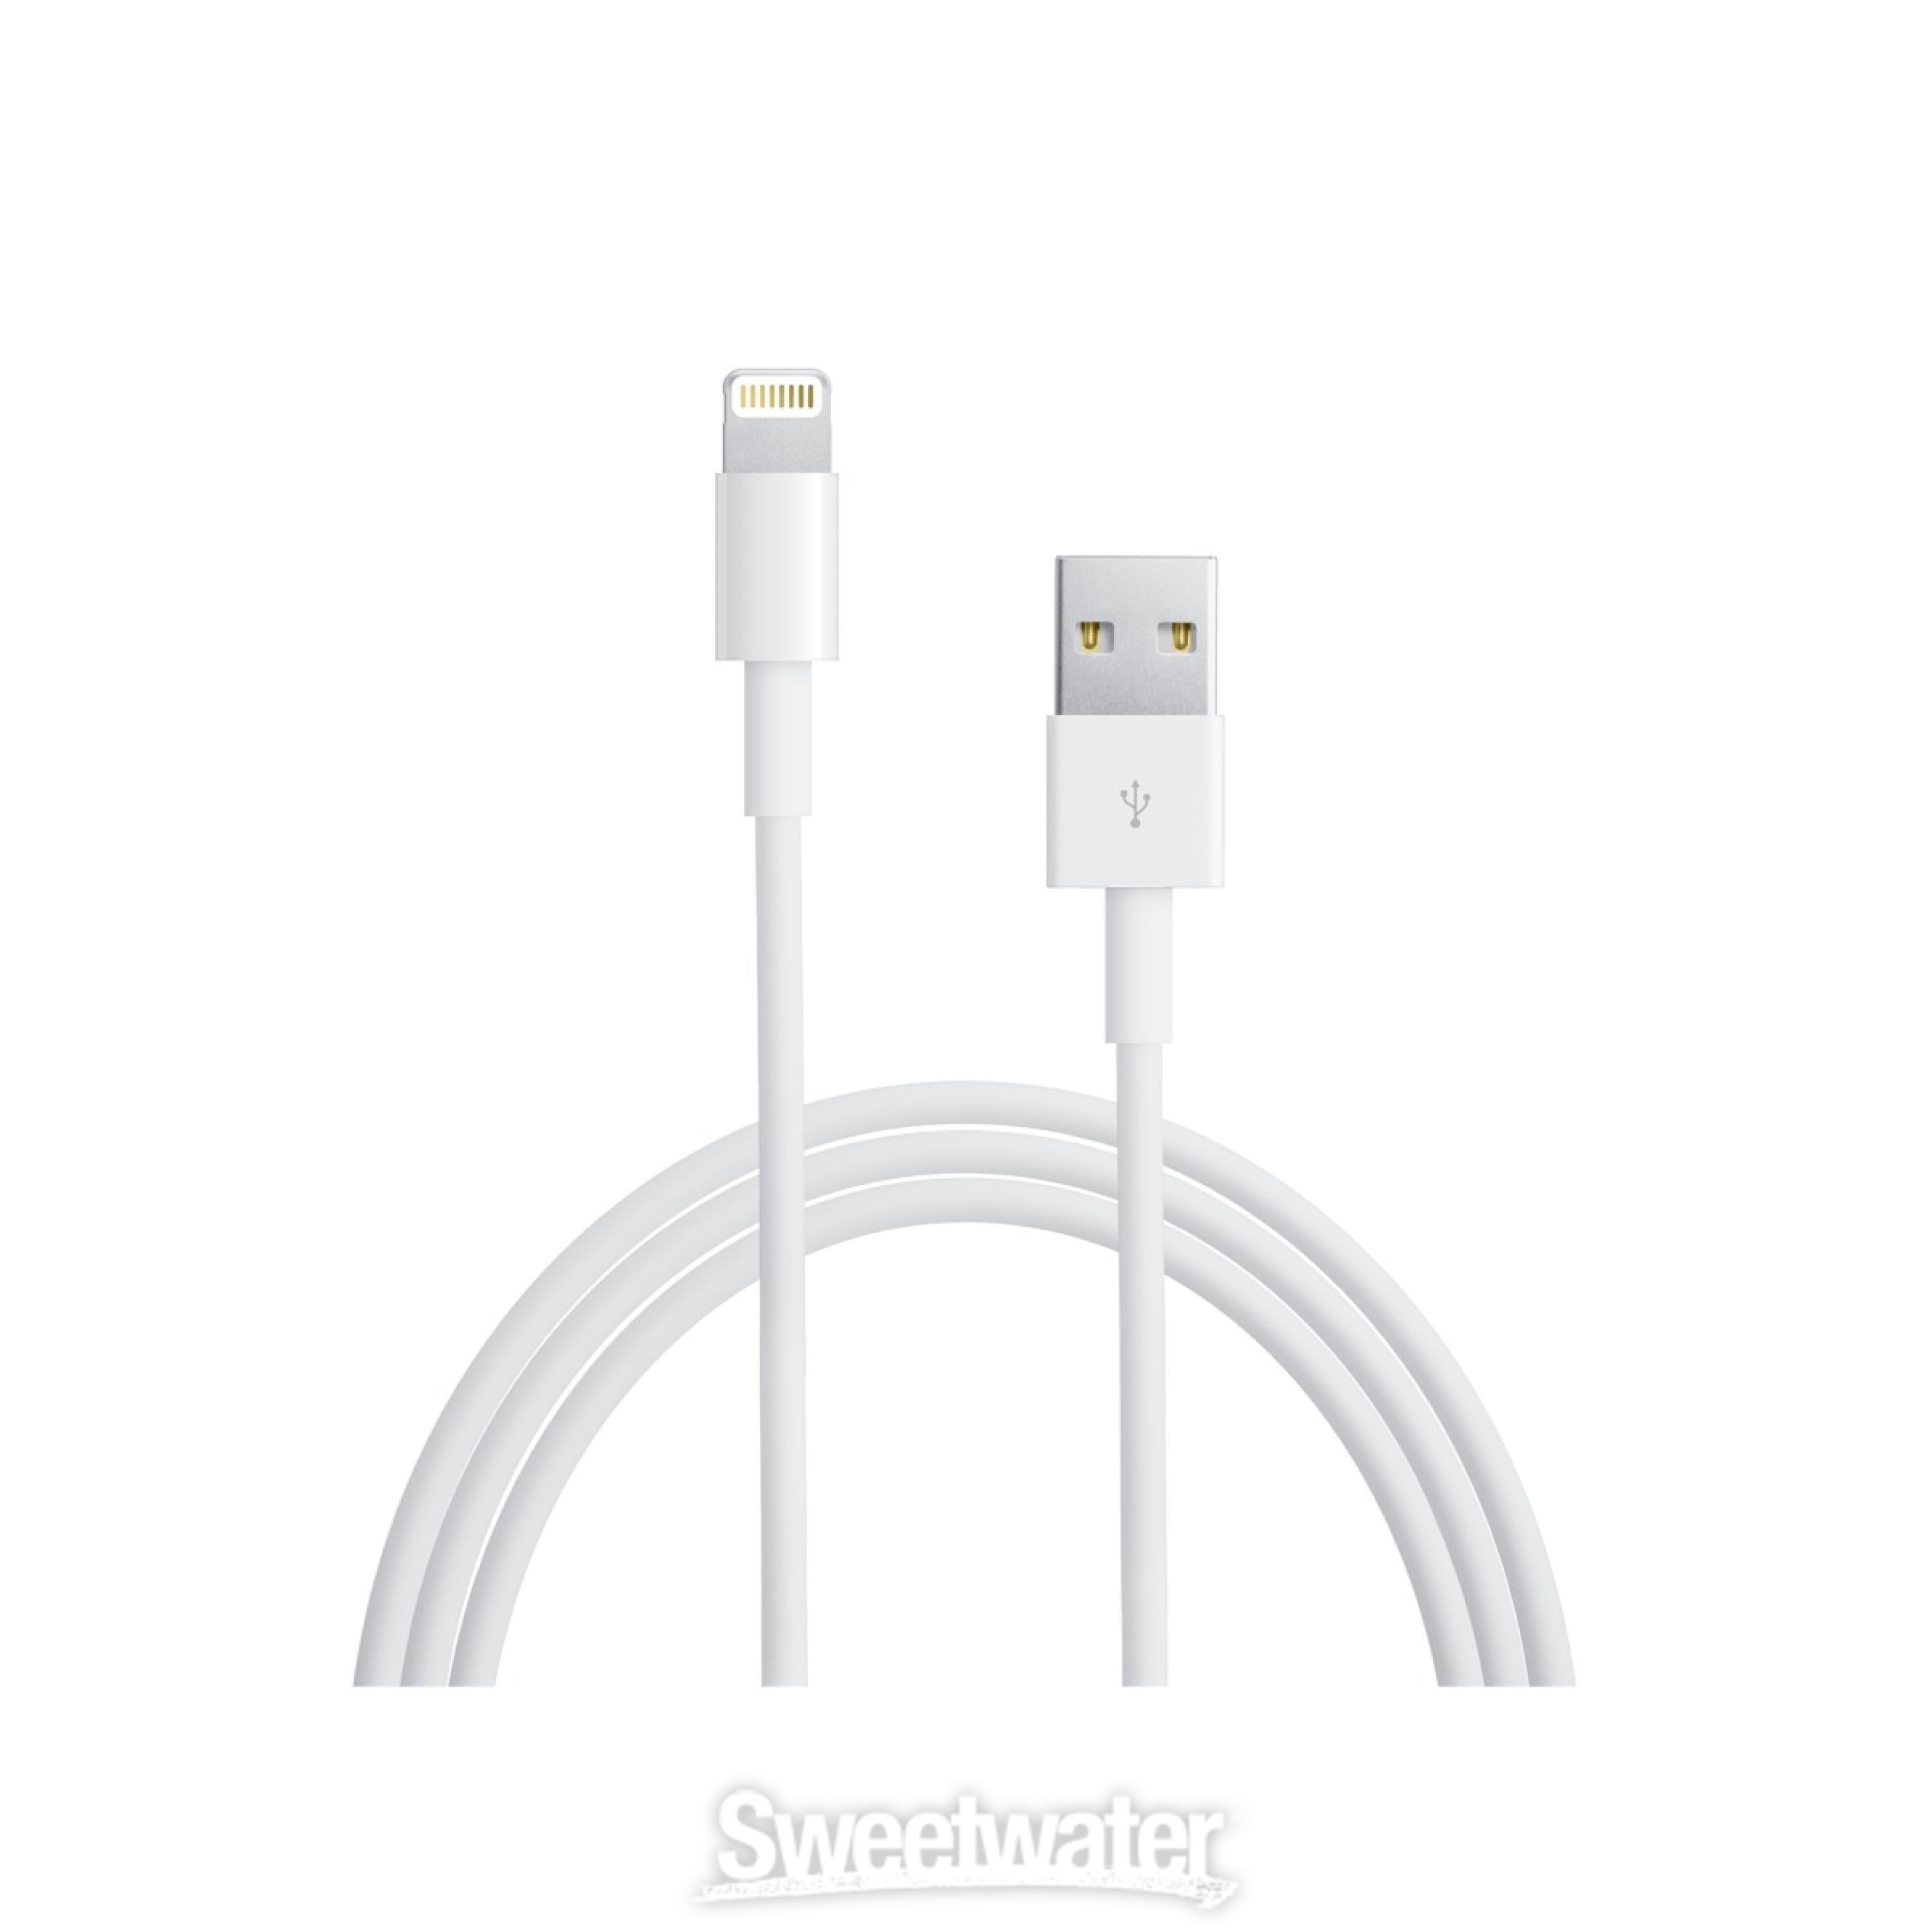 Apple iPad mini 3 Wi-Fi + Cellular 16GB - Space Gray | Sweetwater